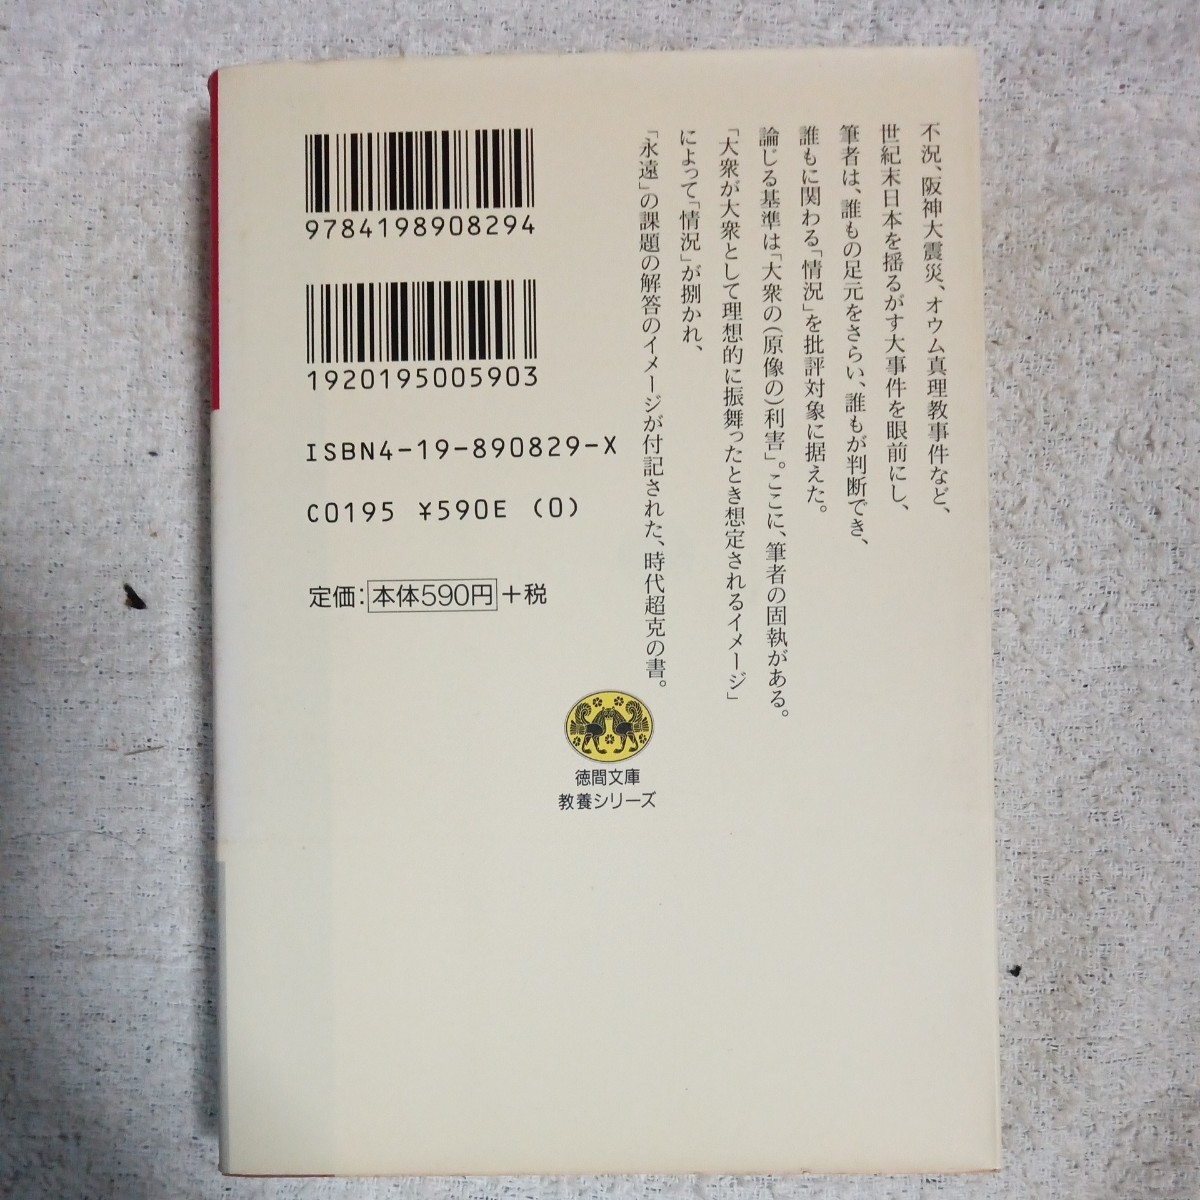  супер .книга@ принцип ( добродетель промежуток библиотека образование серии ) Yoshimoto Takaaki с некоторыми замечаниями Junk 9784198908294